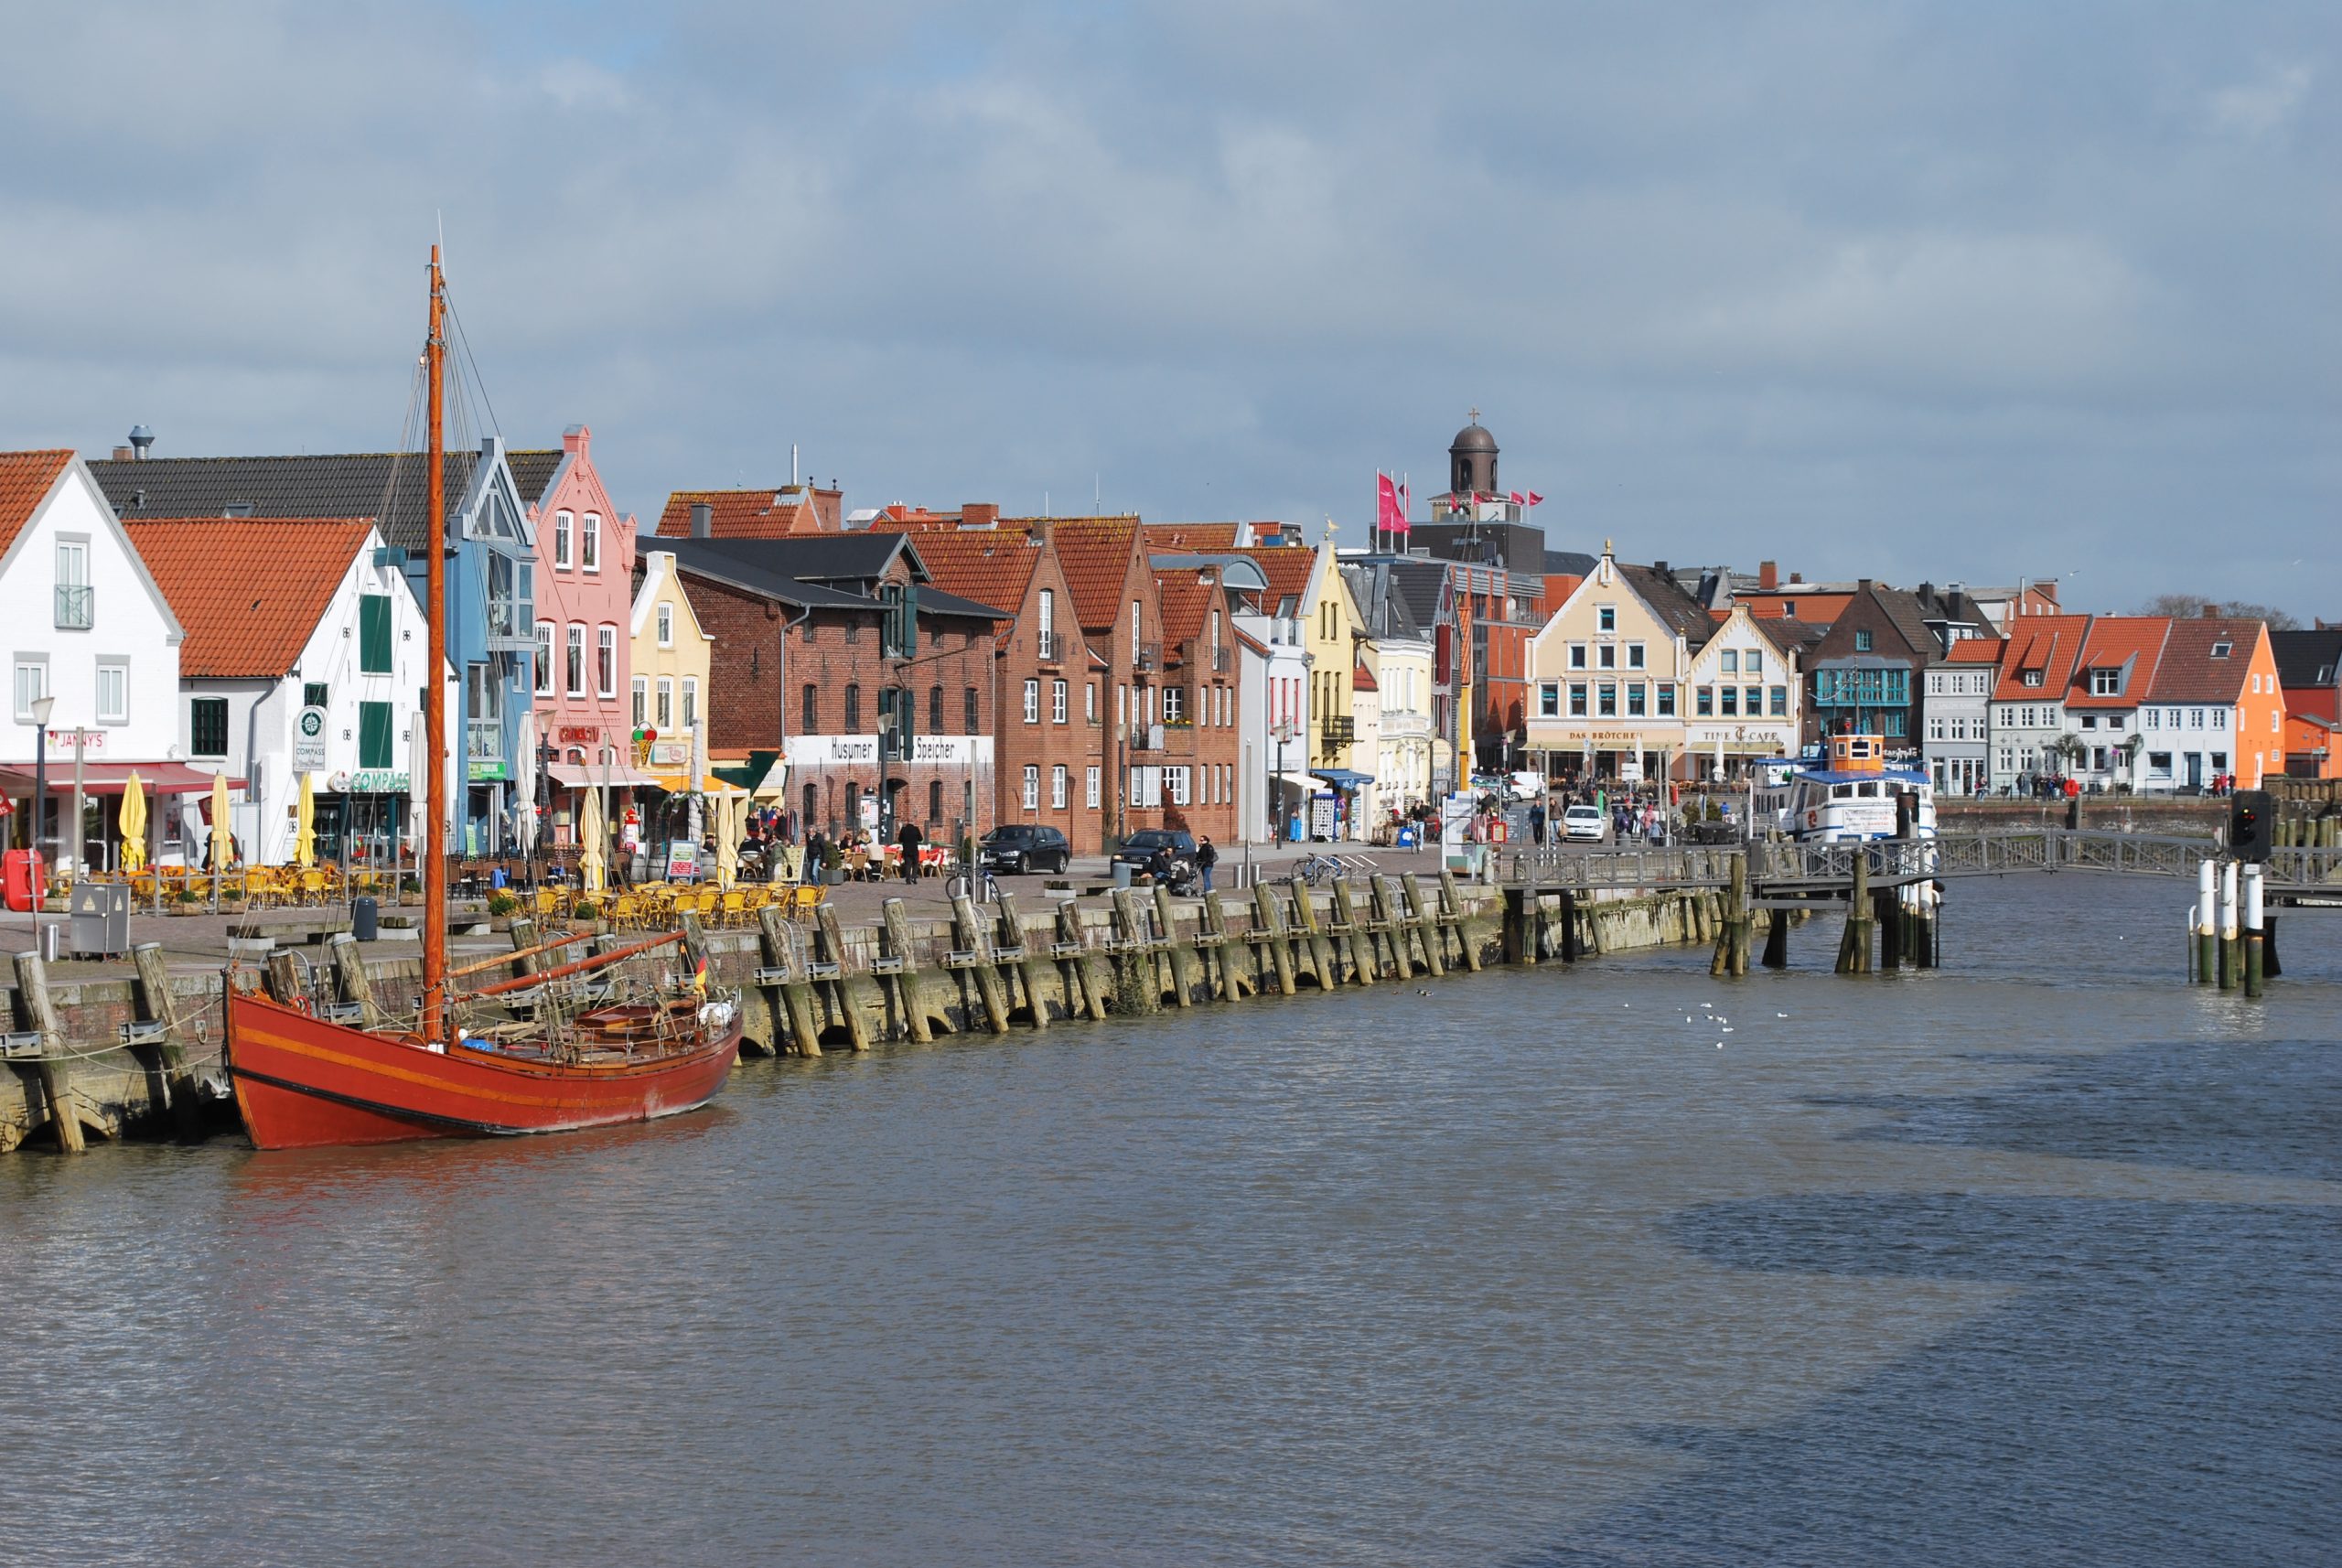 Der Husumer Hafen mit historischen Gebäuden, Promenade und kleinen Segelbooten.